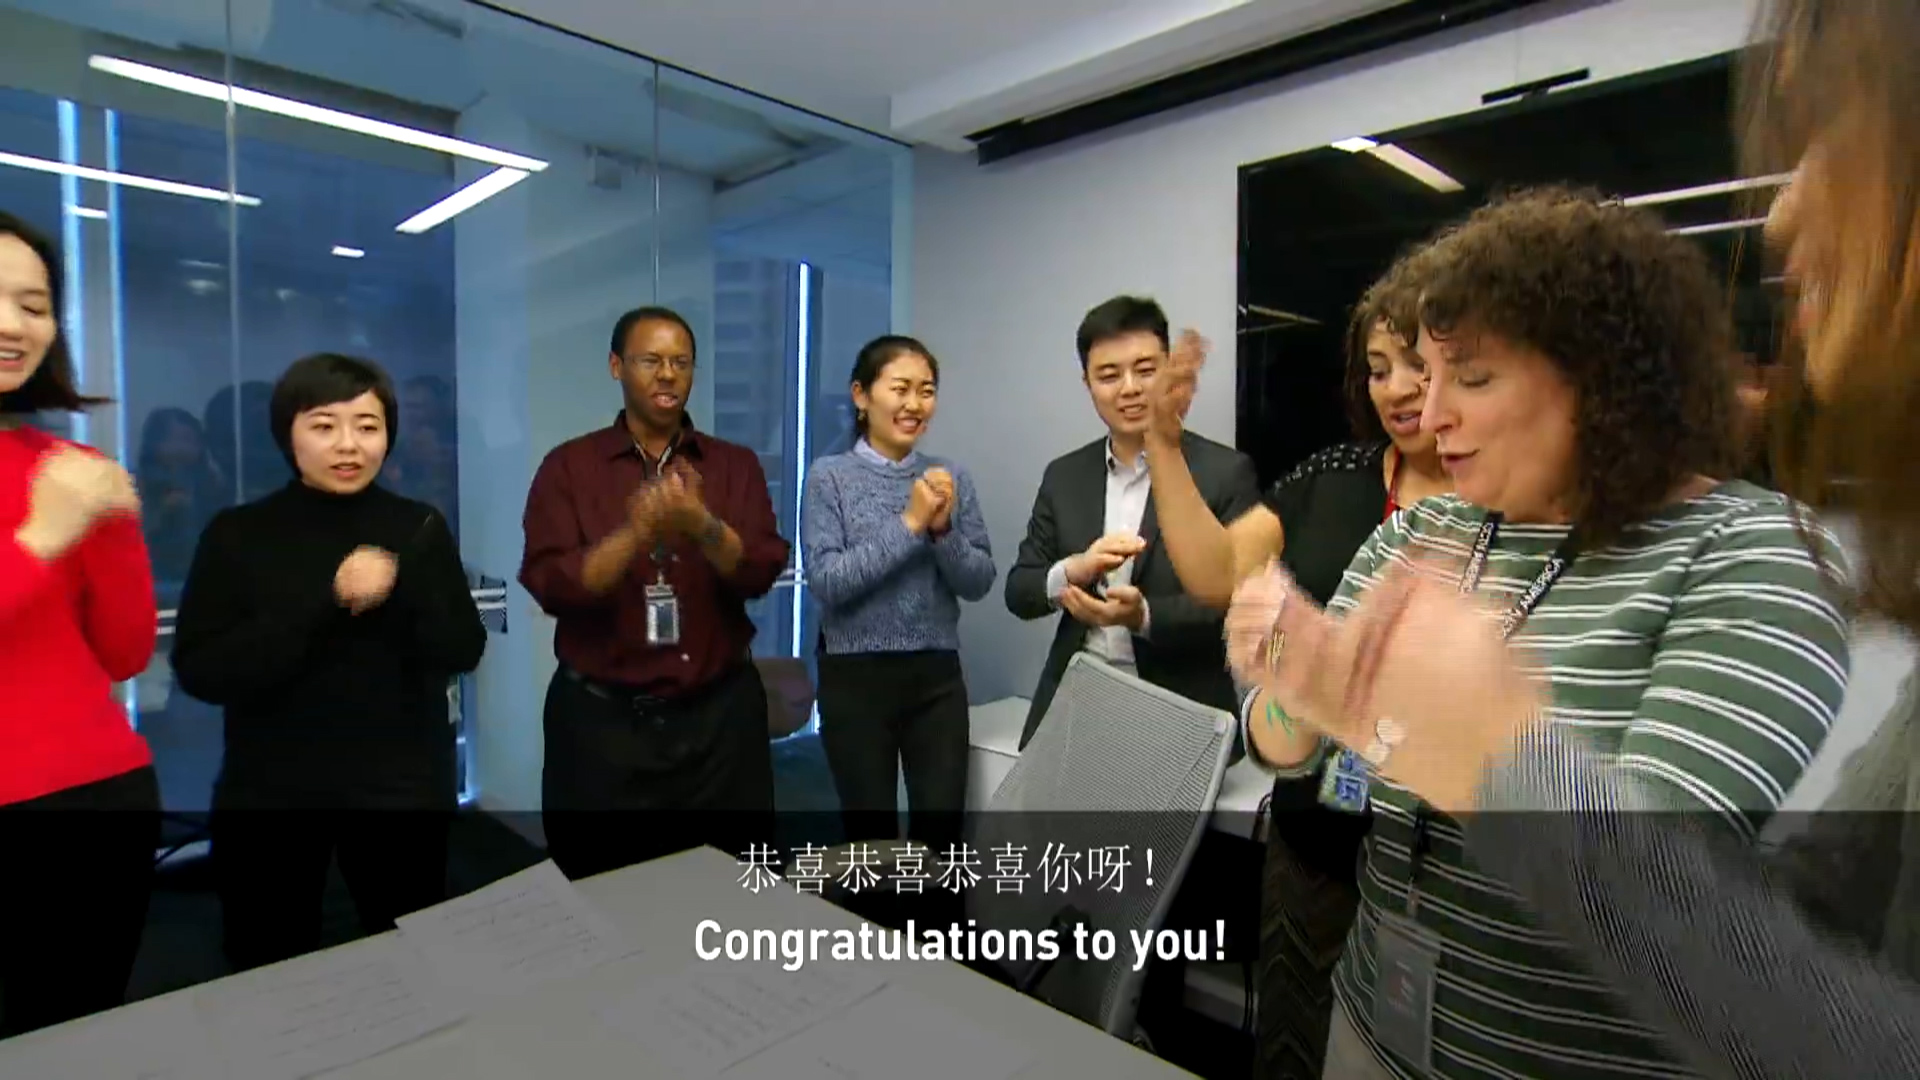 CGTN America staffers sing "Gong Xi Gong Xi"